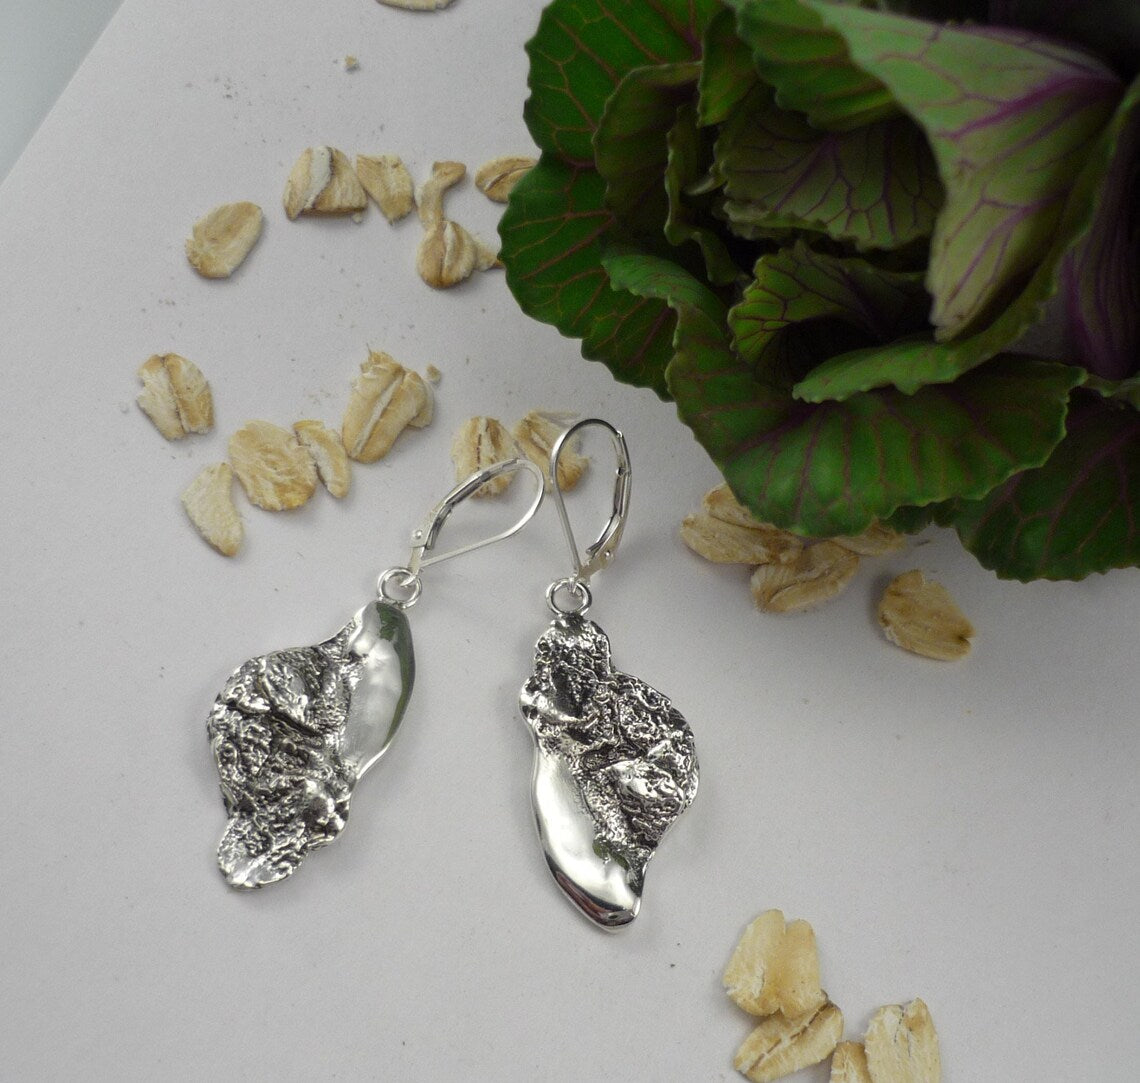 OAT FLAKES, breakfast inspired sterling silver earrings